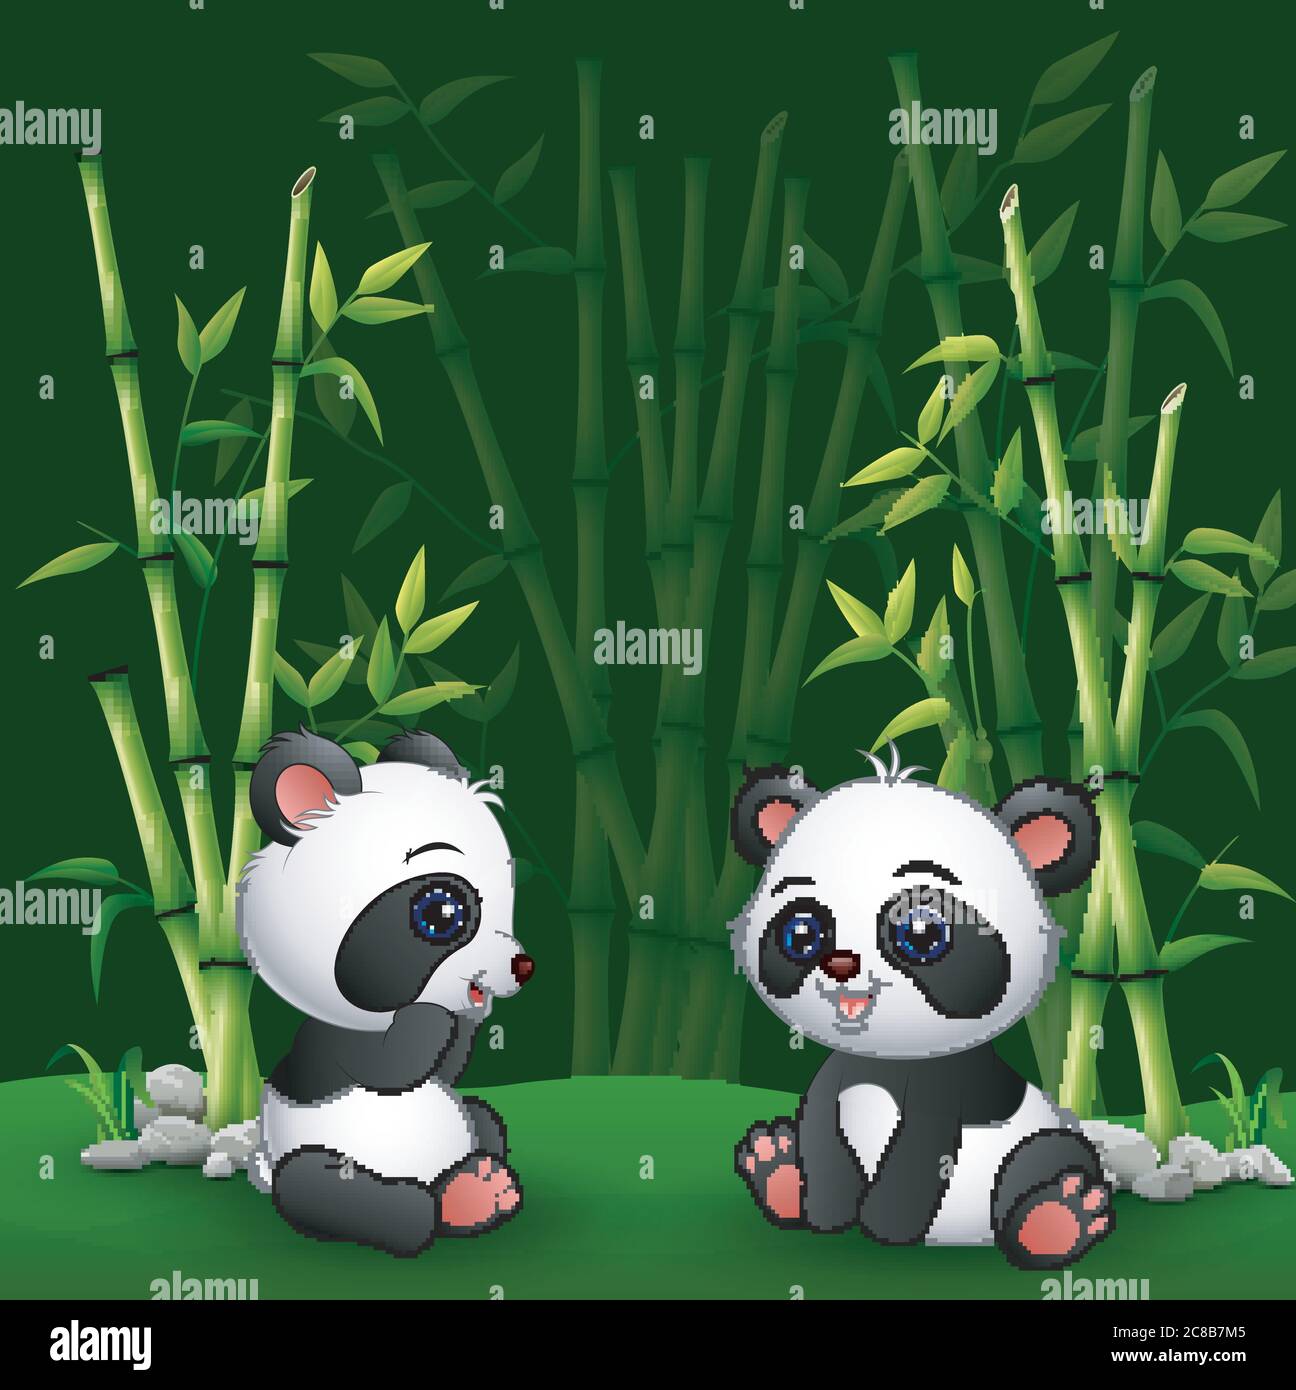 Premium Vector  Cute panda bear cartoon sleep on bamboo good night kawaii  animal